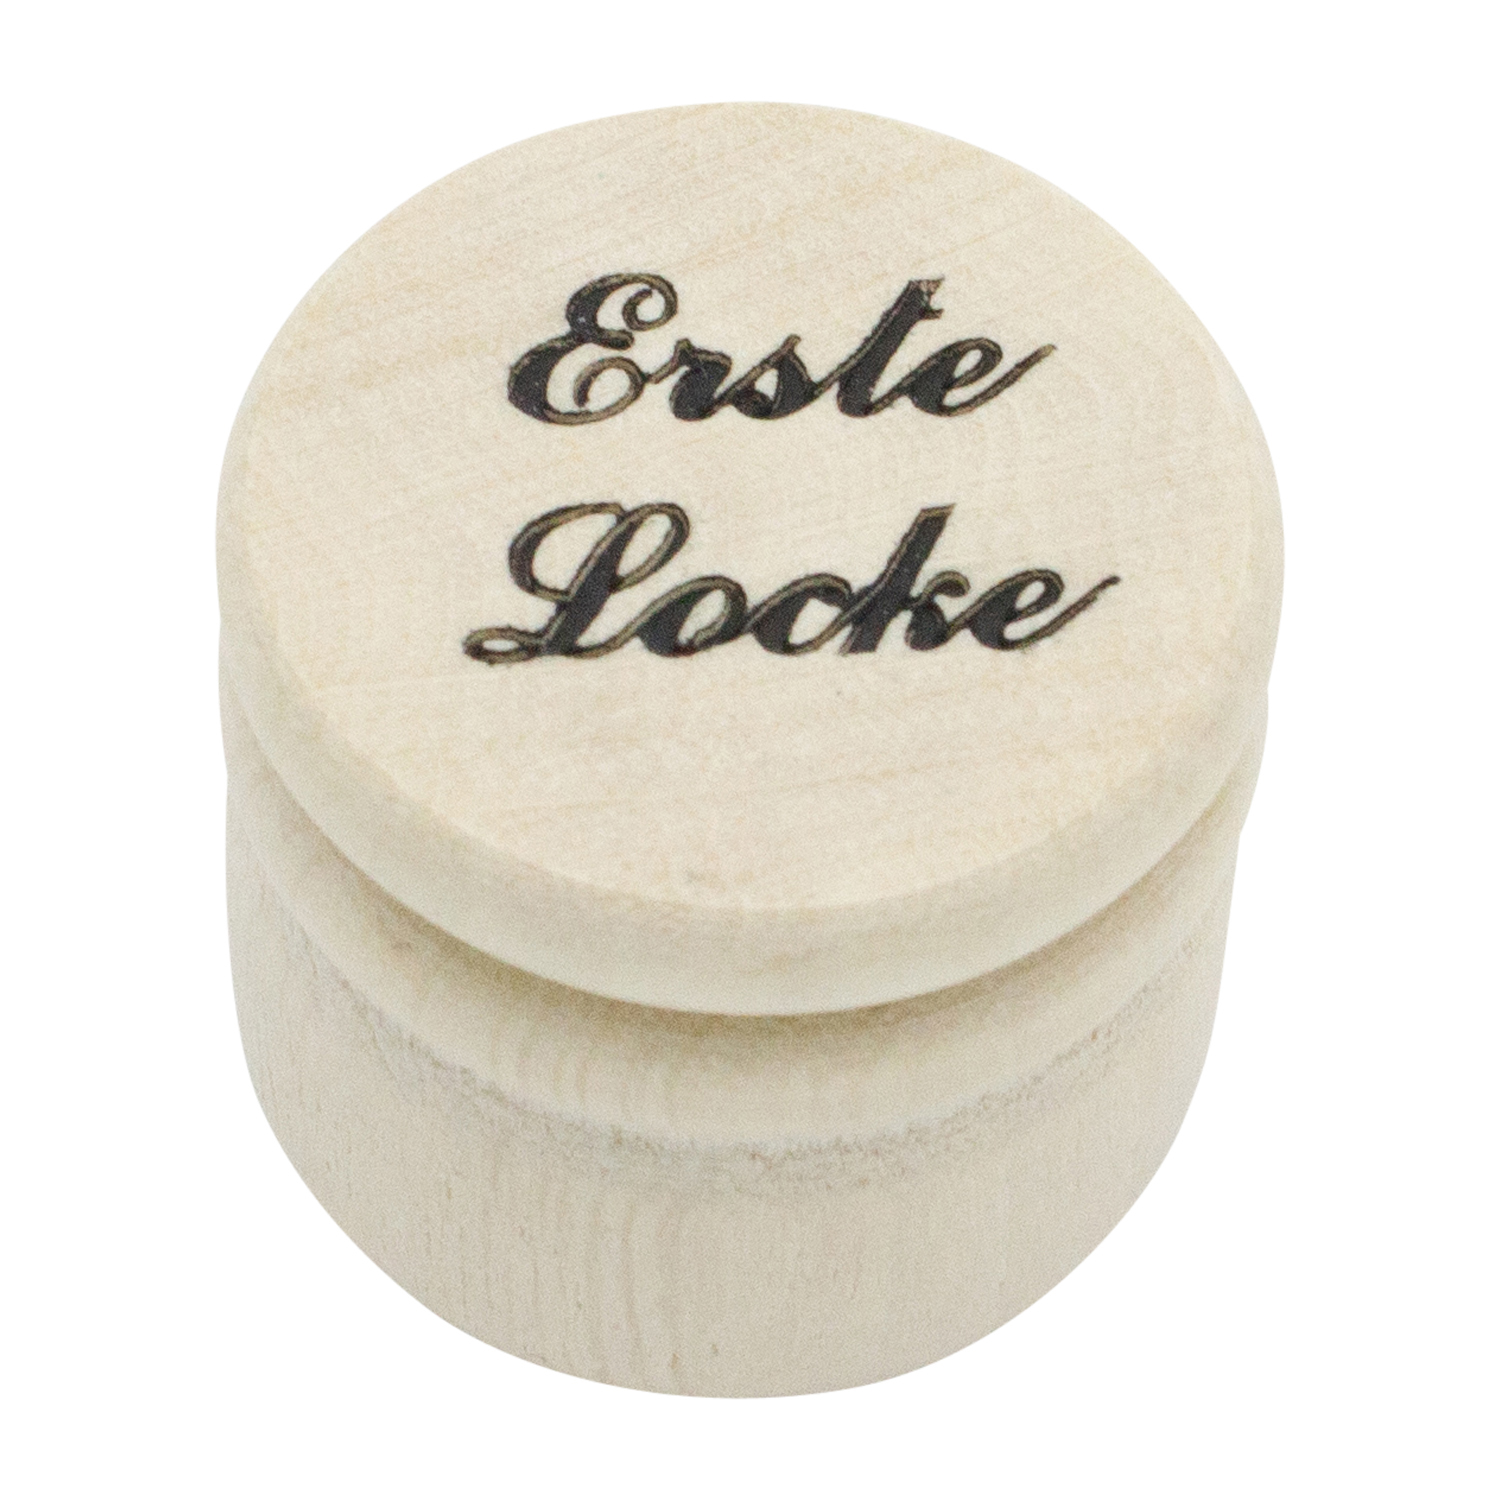 Erste Locke Dose Holz Ø 3,5 cm Holzdose mit Schraubverschluss - 7019